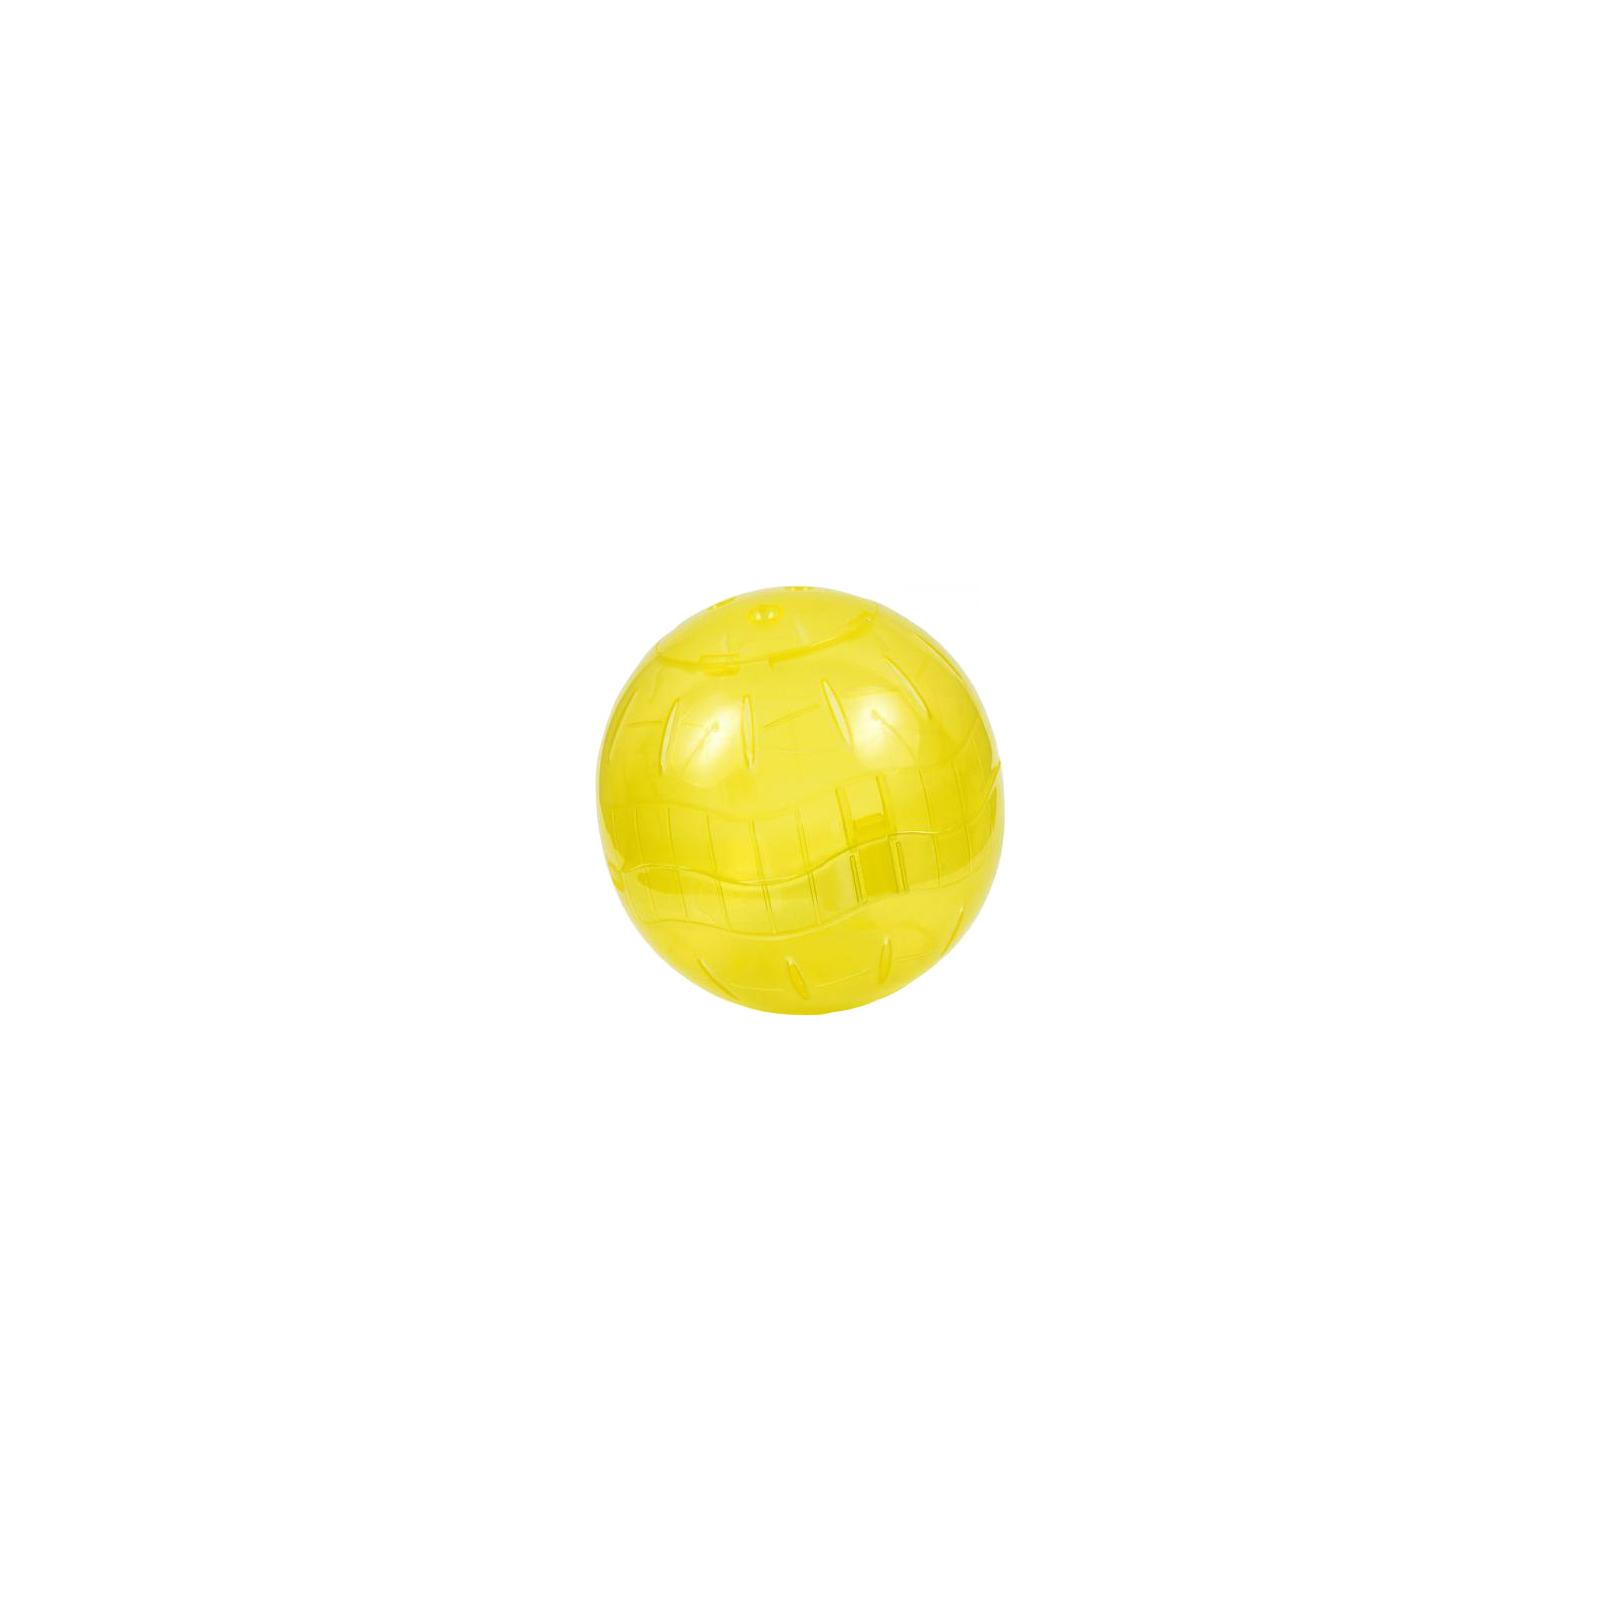 Игрушка для грызунов Природа шар d 19 см желтый (4820157408308)